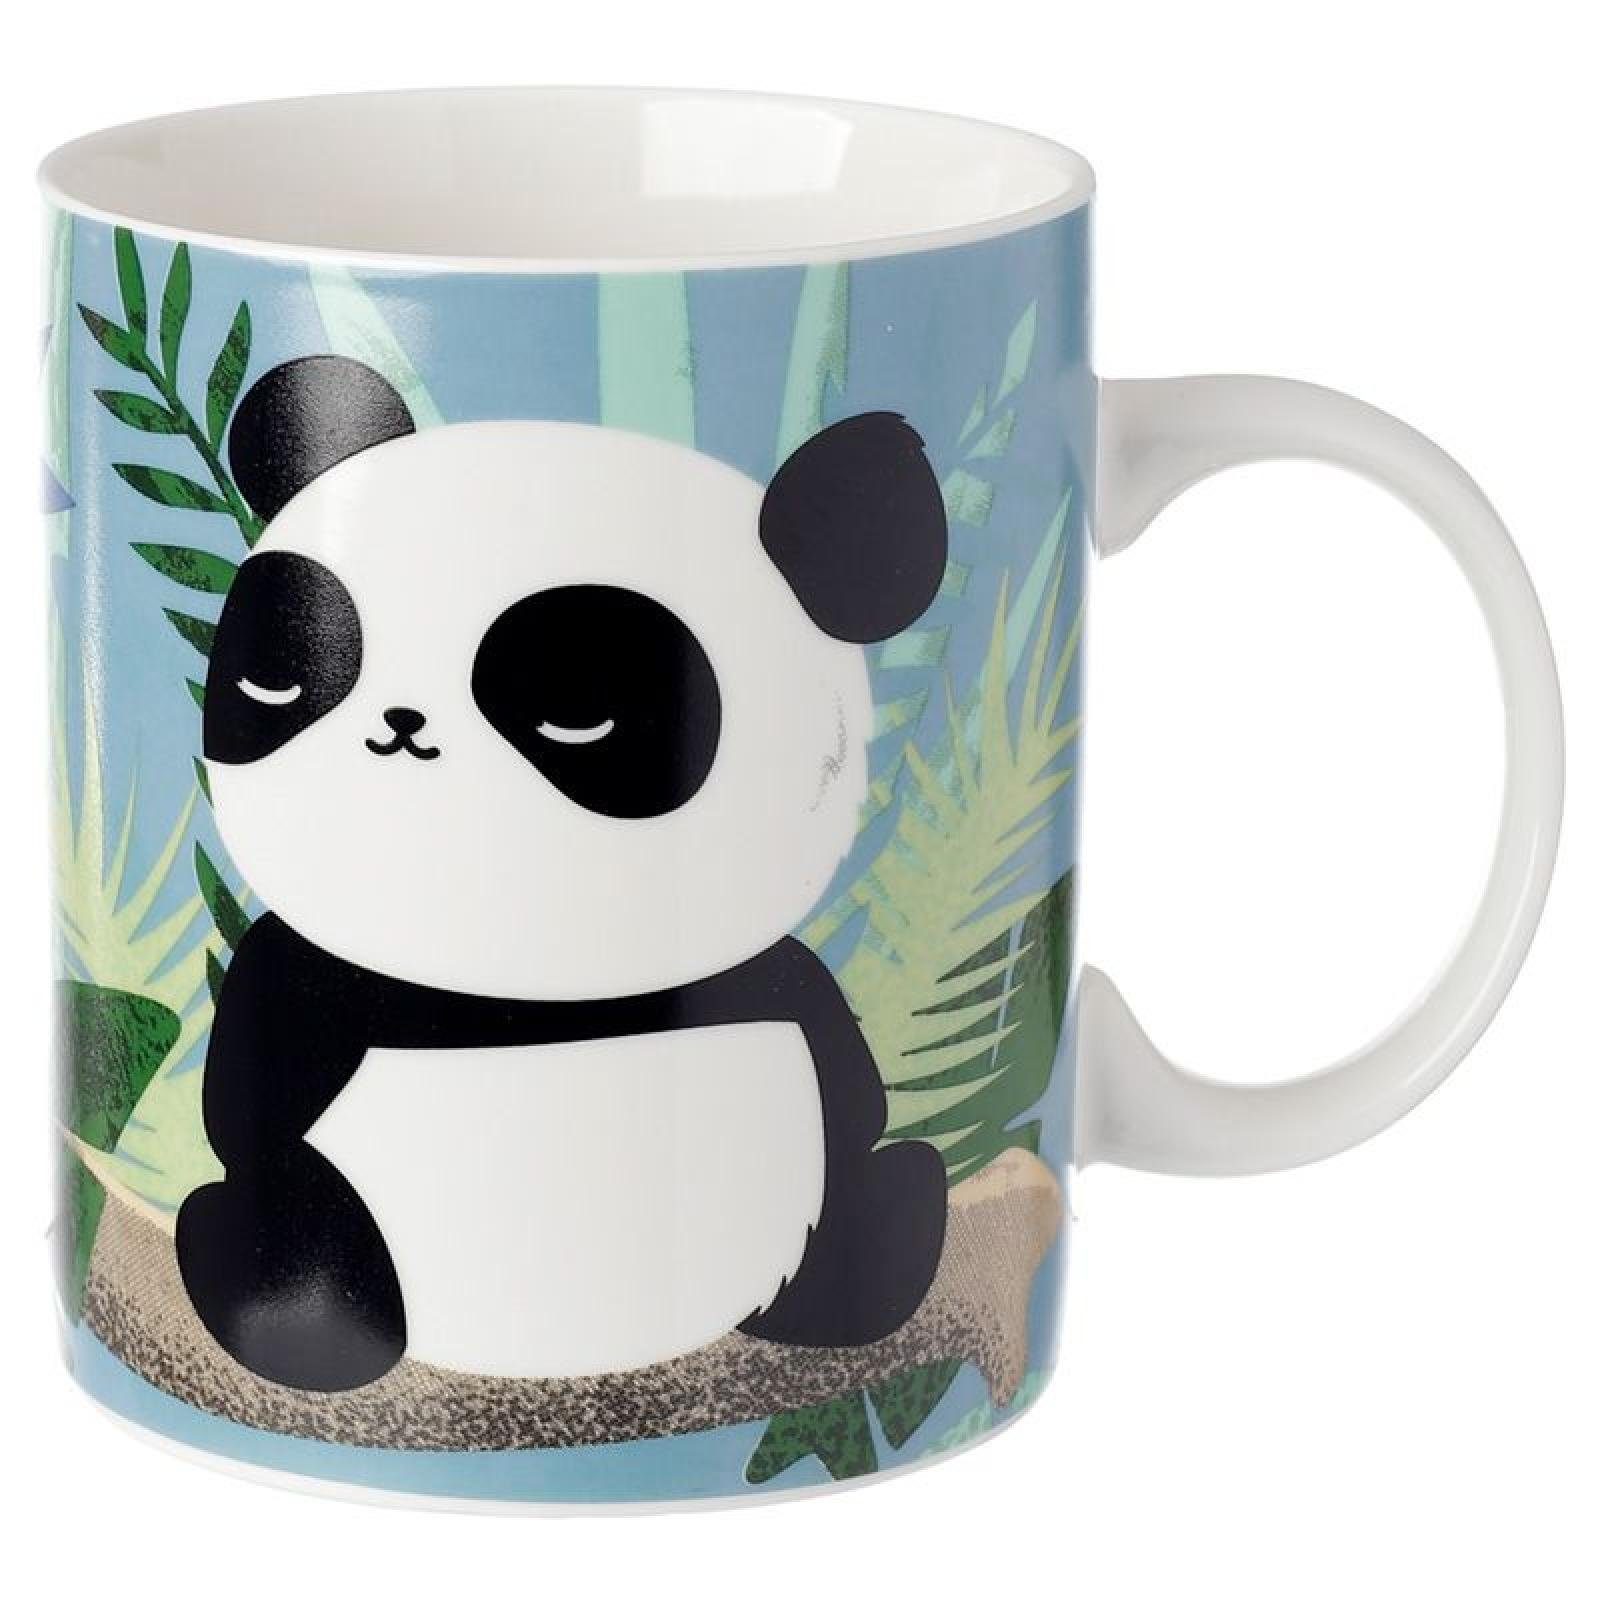 Puckator Tasse Pandarama Panda Tasse aus Porzellan